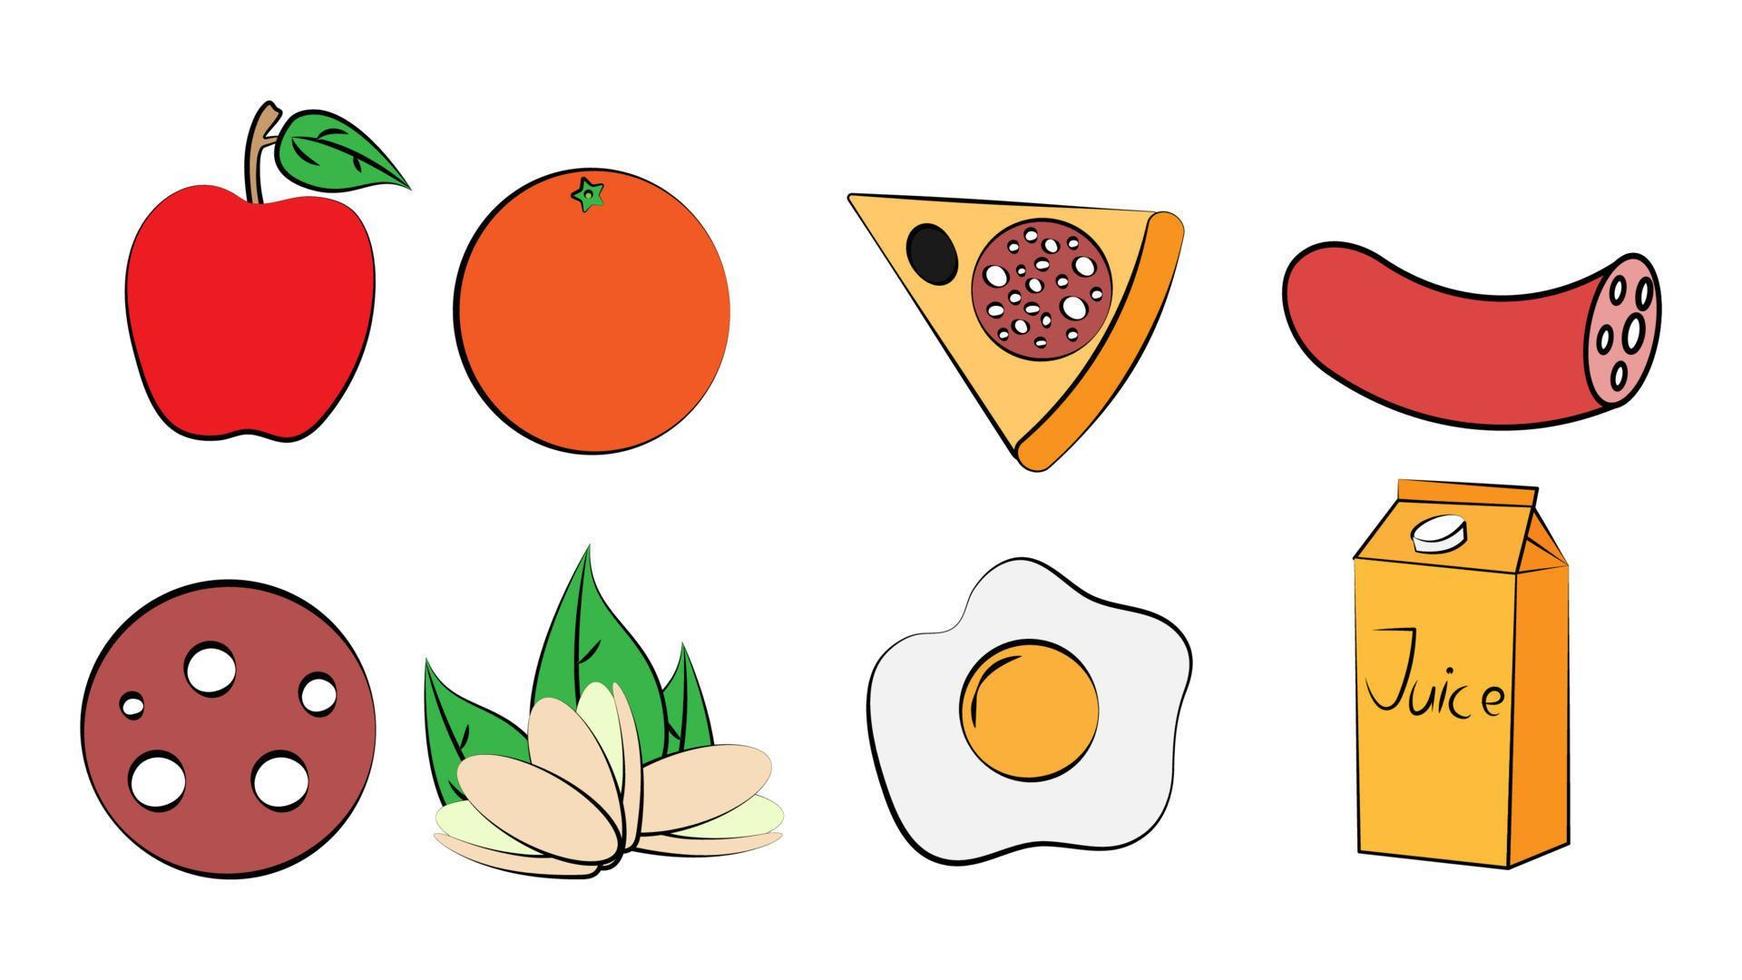 ein satz von acht symbolen mit köstlichen speisen und snacks für ein café-bar-restaurant auf weißem hintergrund apfel, orange, pizza, wurst, fistatski, ei, saft vektor